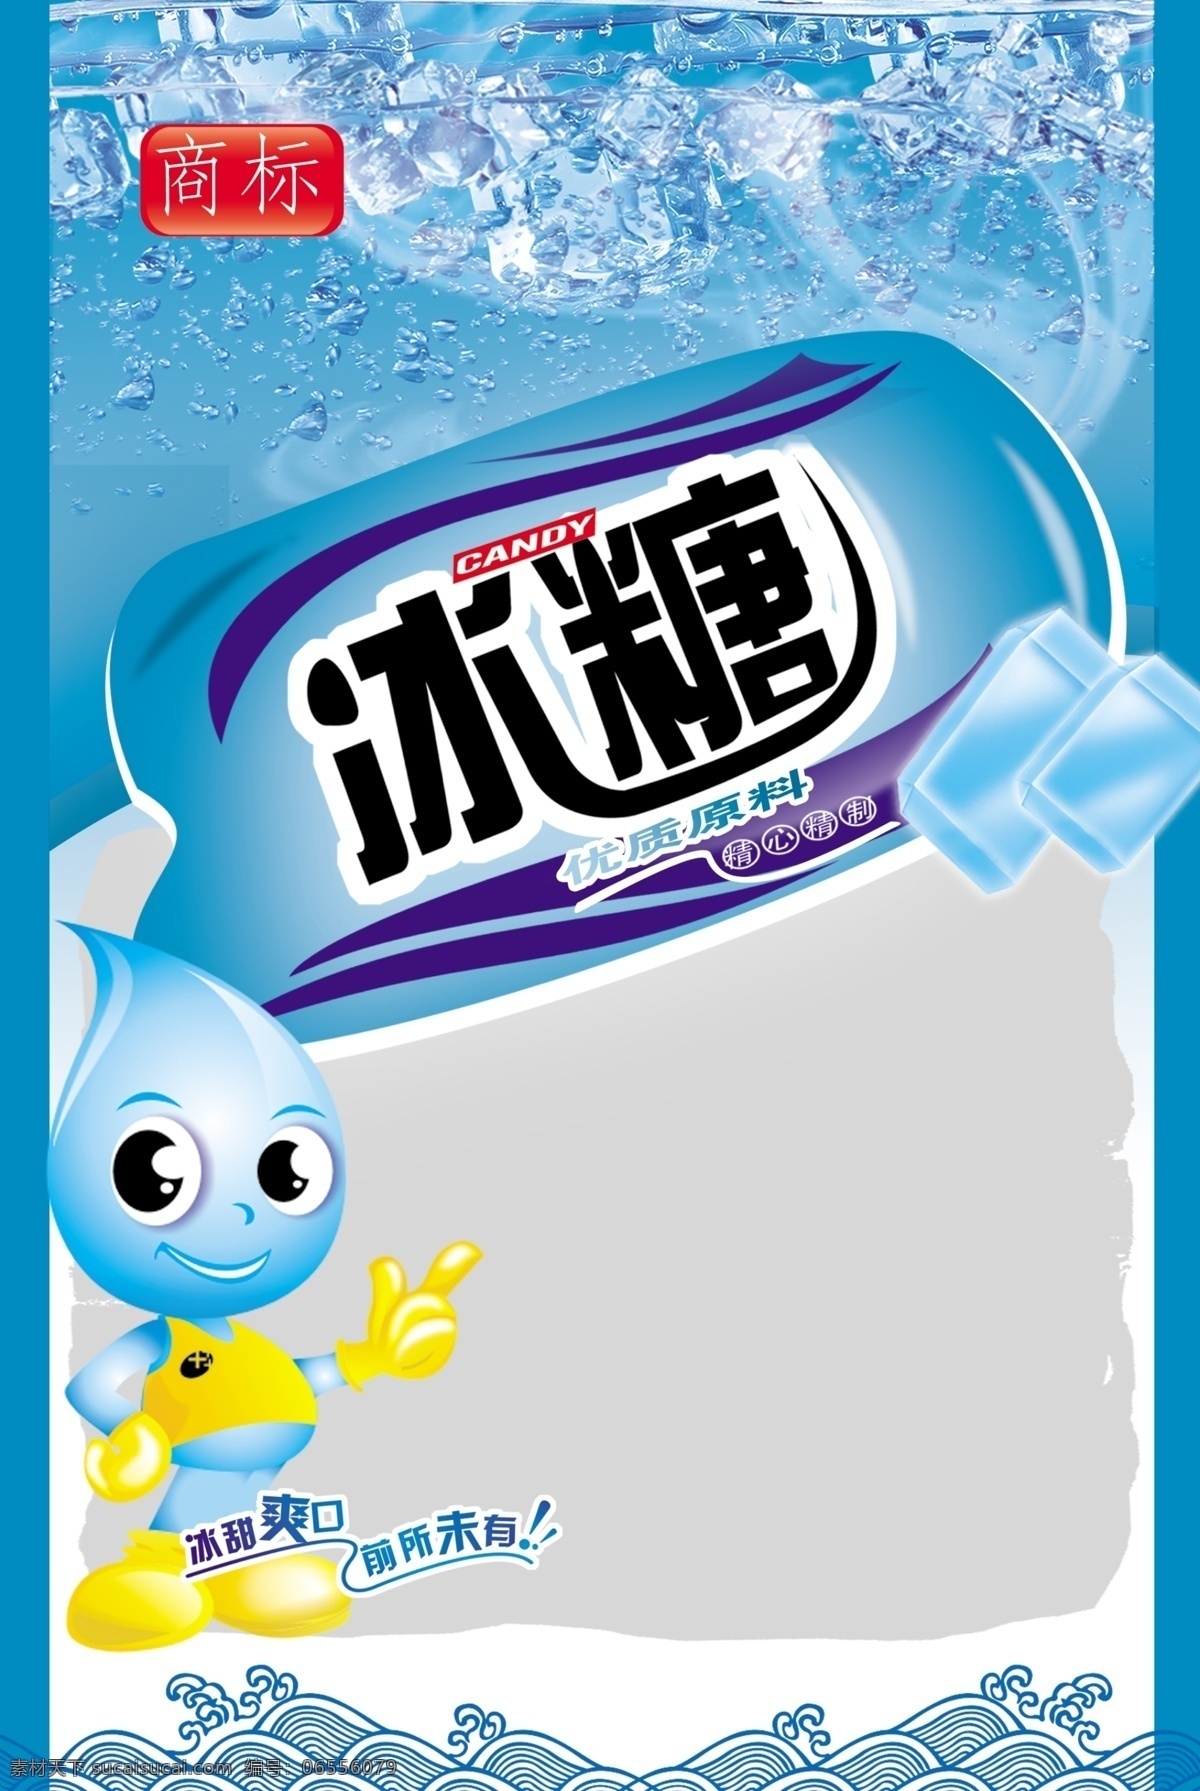 冰糖 糖类 食品包装 冰糖包装 包装设计 广告设计模板 源文件